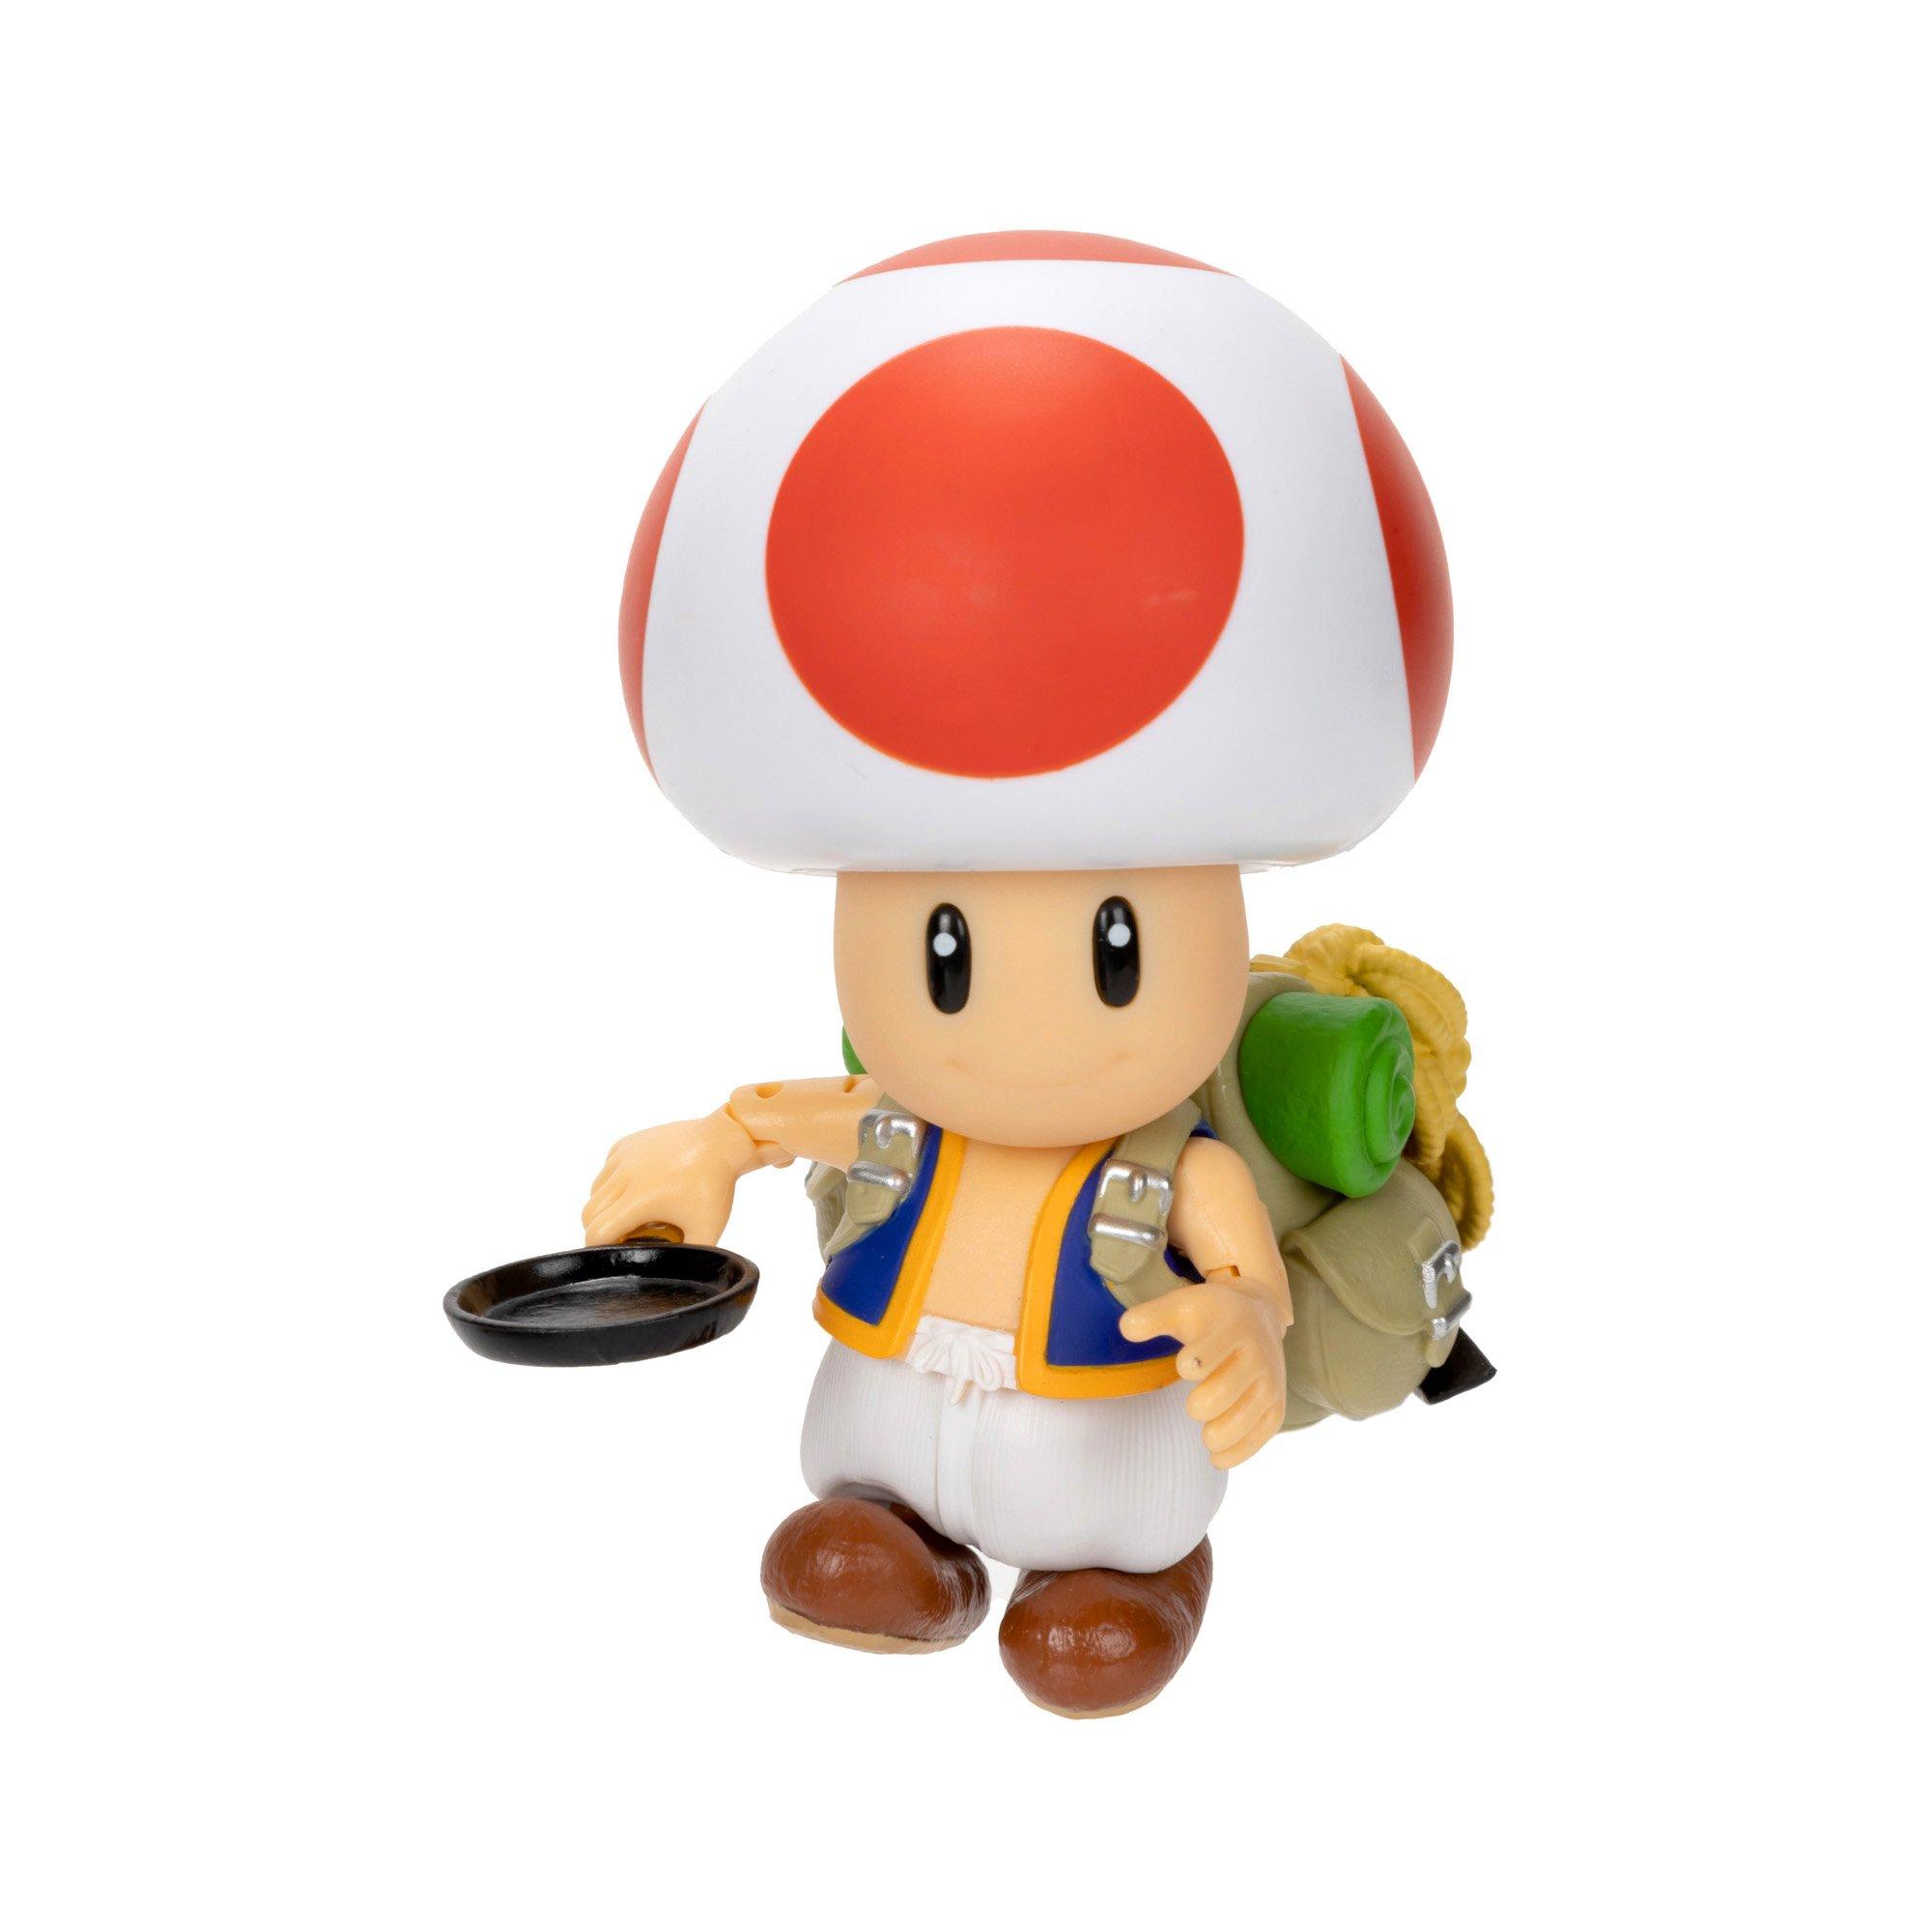 Nintendo - Super Mario Bros Action Figure Lot - Mario Luigi Toad Yoshi